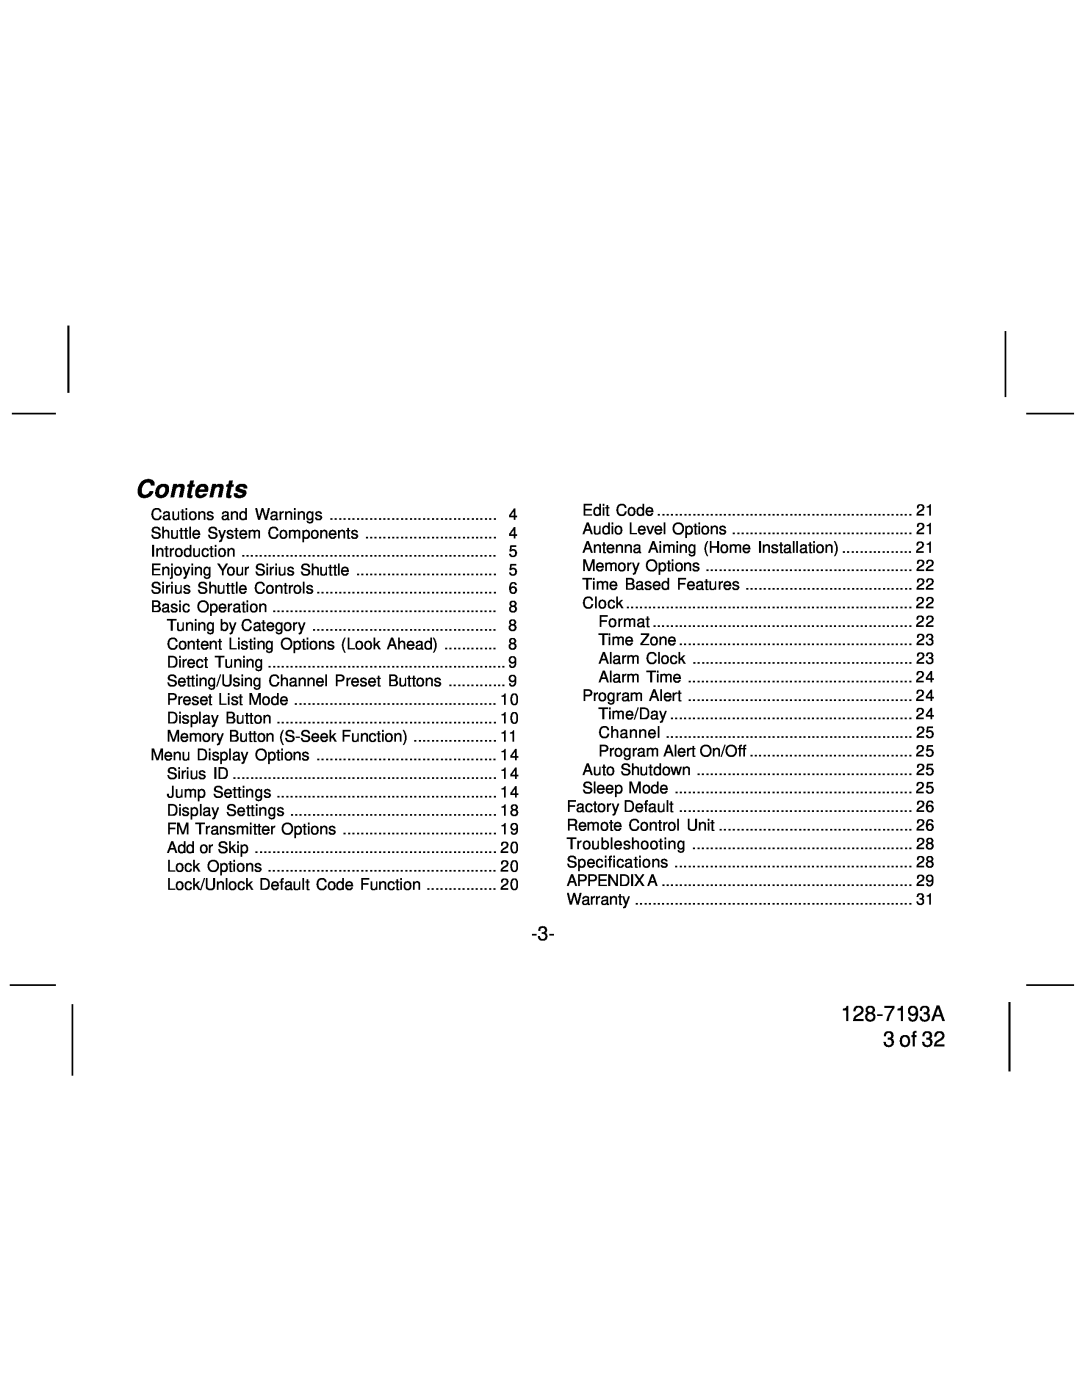 Audiovox SIRPNP3 manual Contents, 128-7193A 3 of 